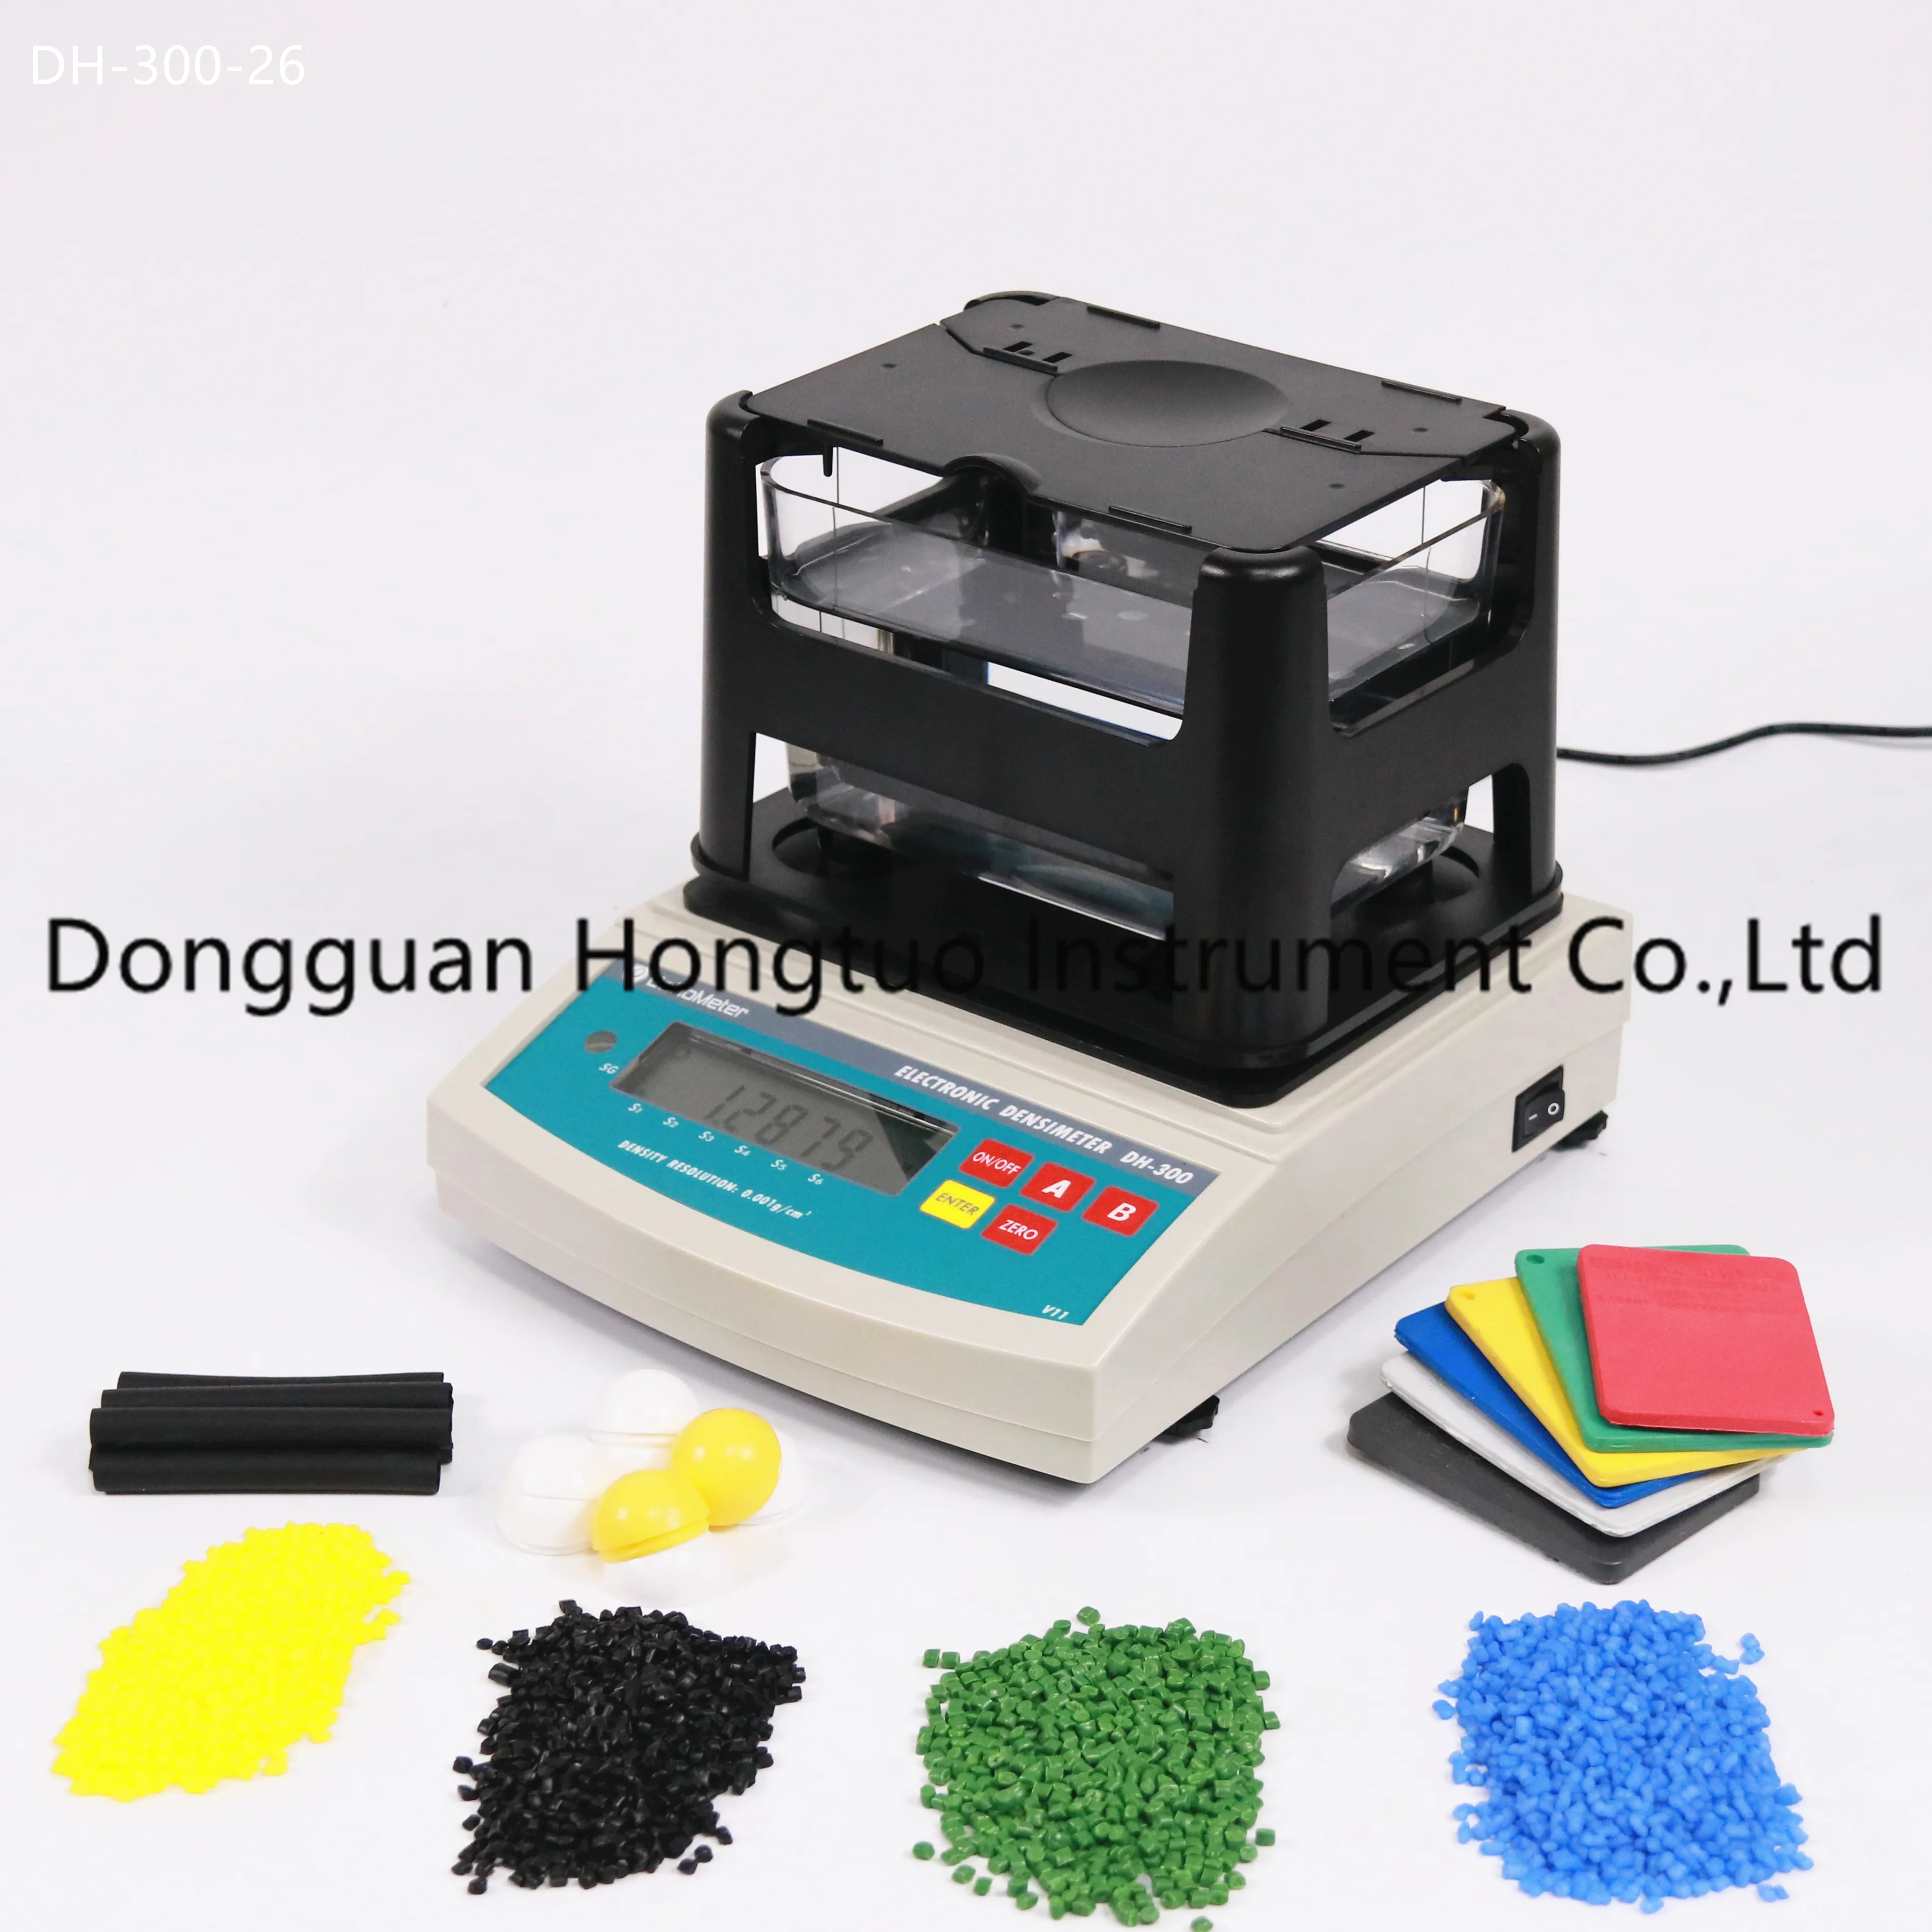 Densímetro eletrônico de borracha do fornecedor popular DH-300, medidor de densidade de plástico cru, testador de densidade de plástico com qualidade superior